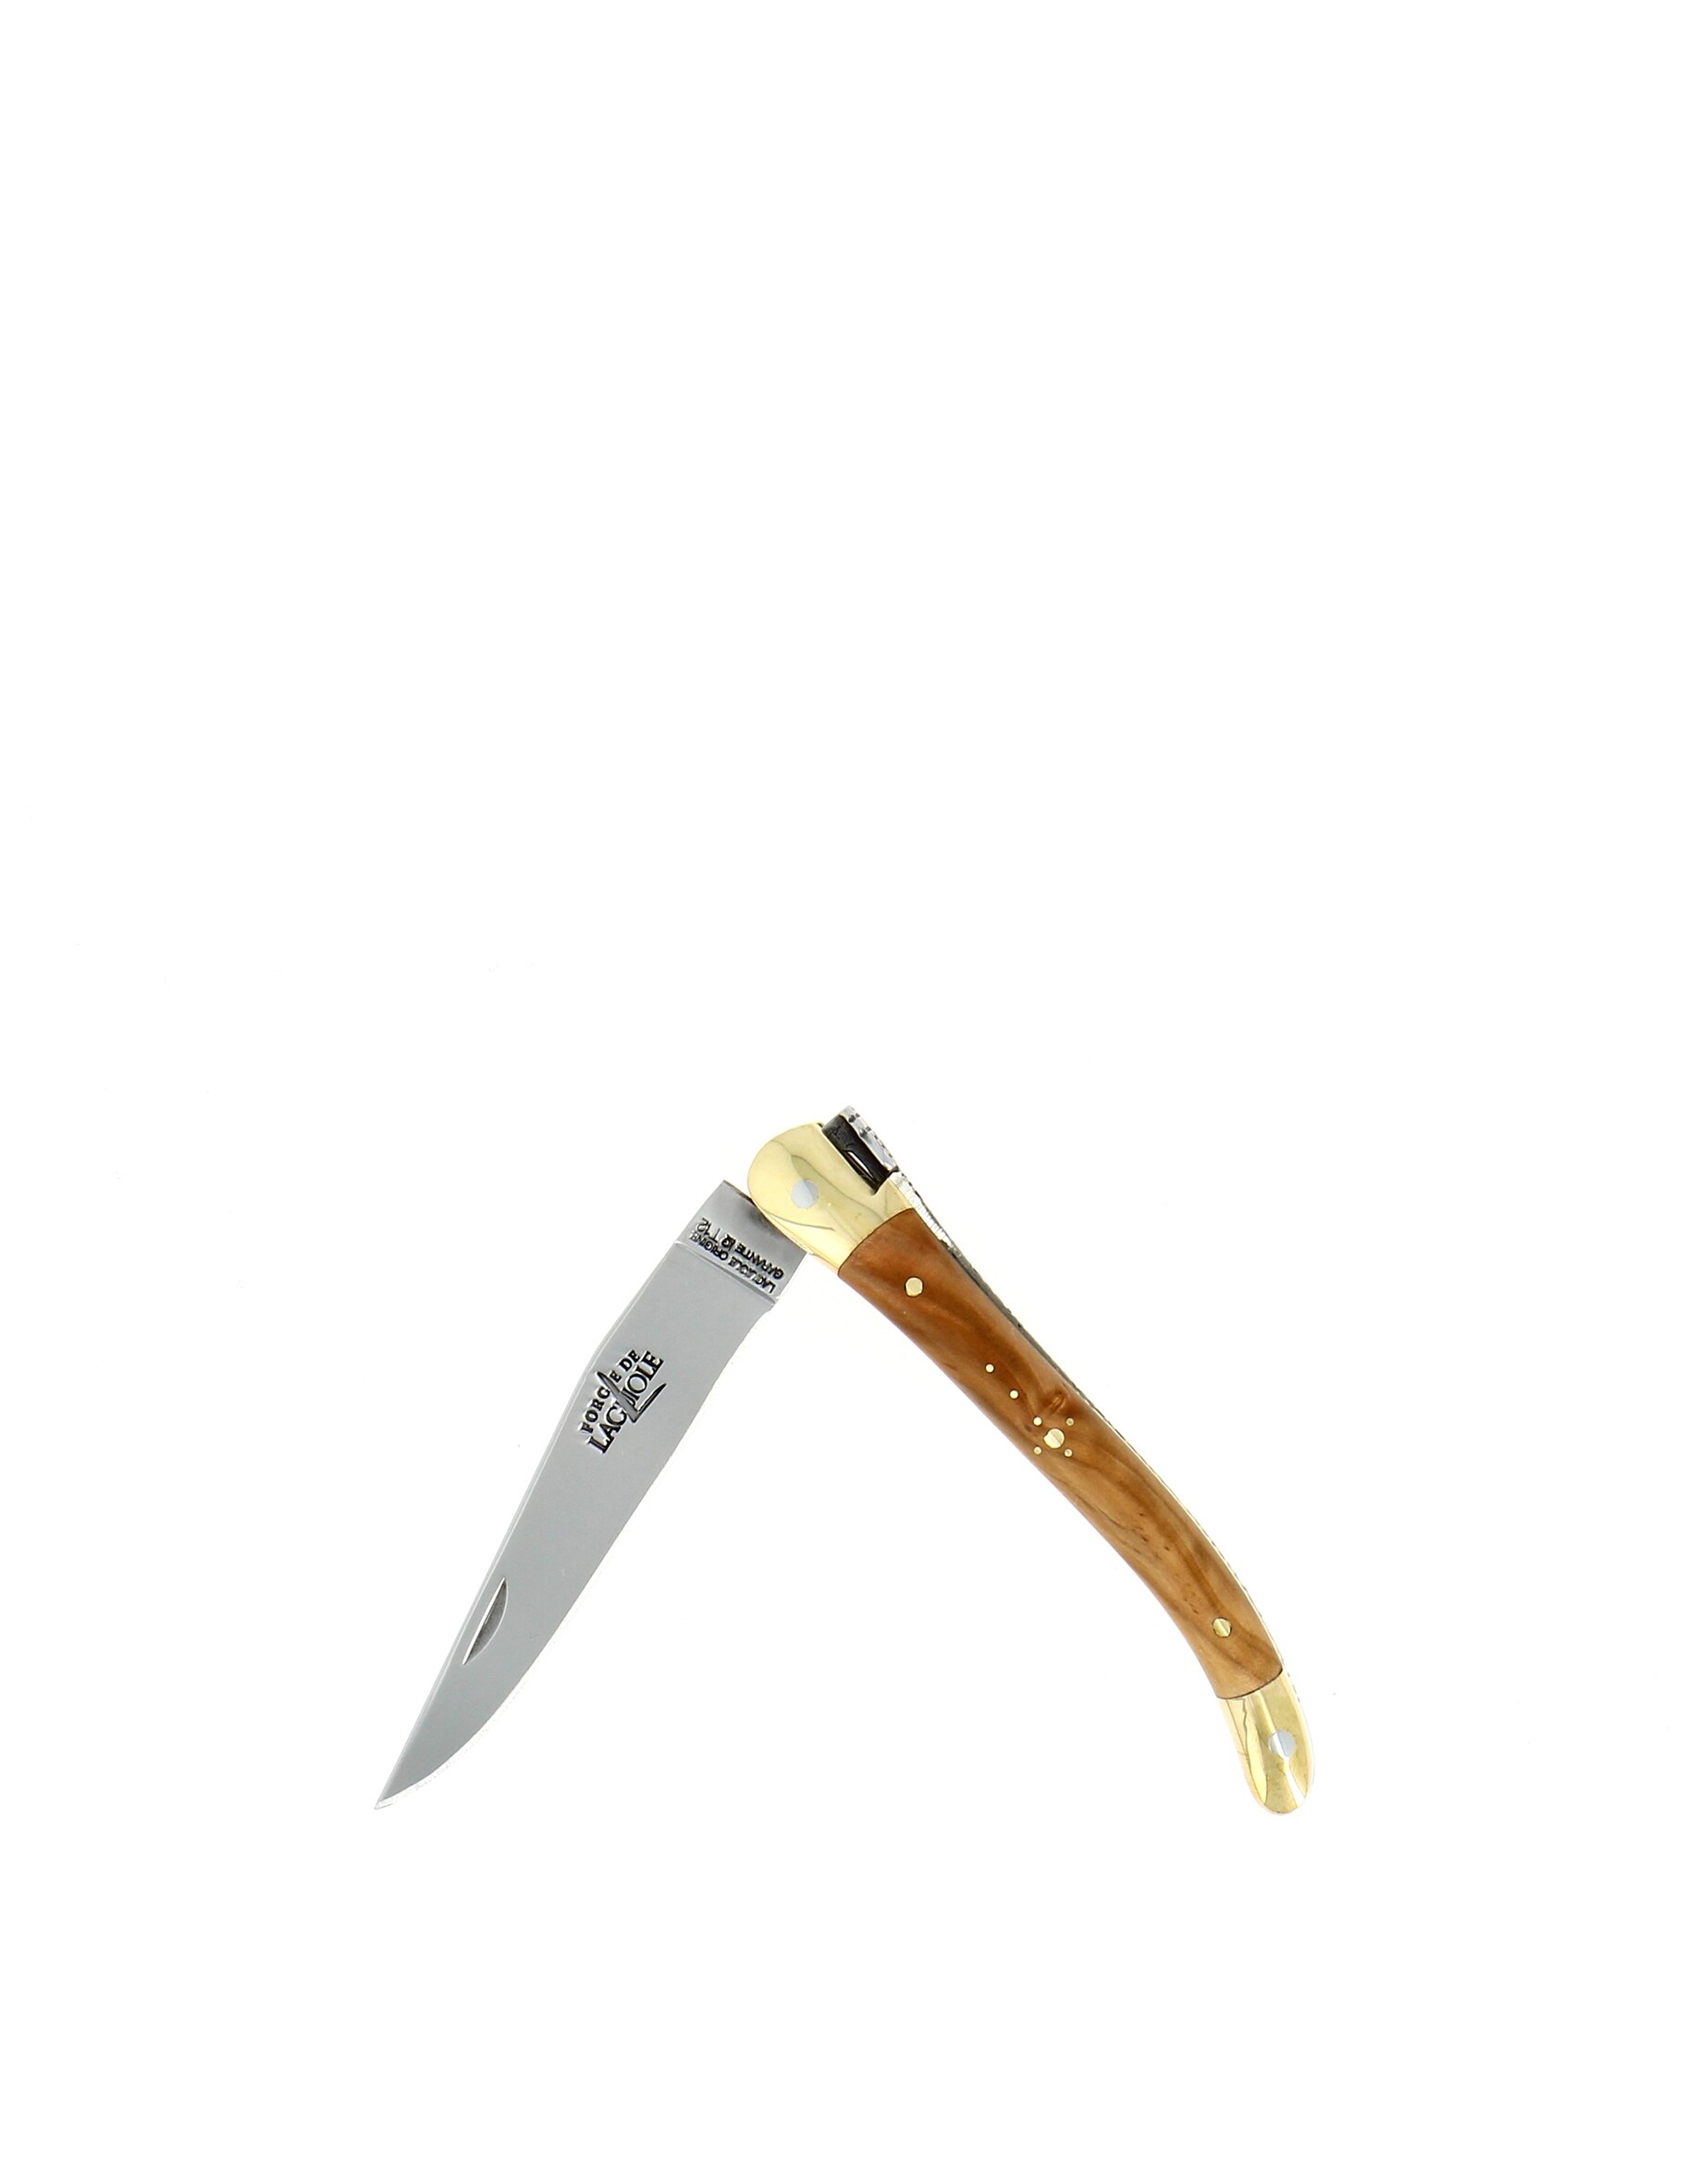 Карманный нож 9 см с ручкой из оливкового дерева Forge De Laguiole сабля en aubrac sabre сhampagne olivier для сабража 40 см cms99oli hzb1 forge de laguiole